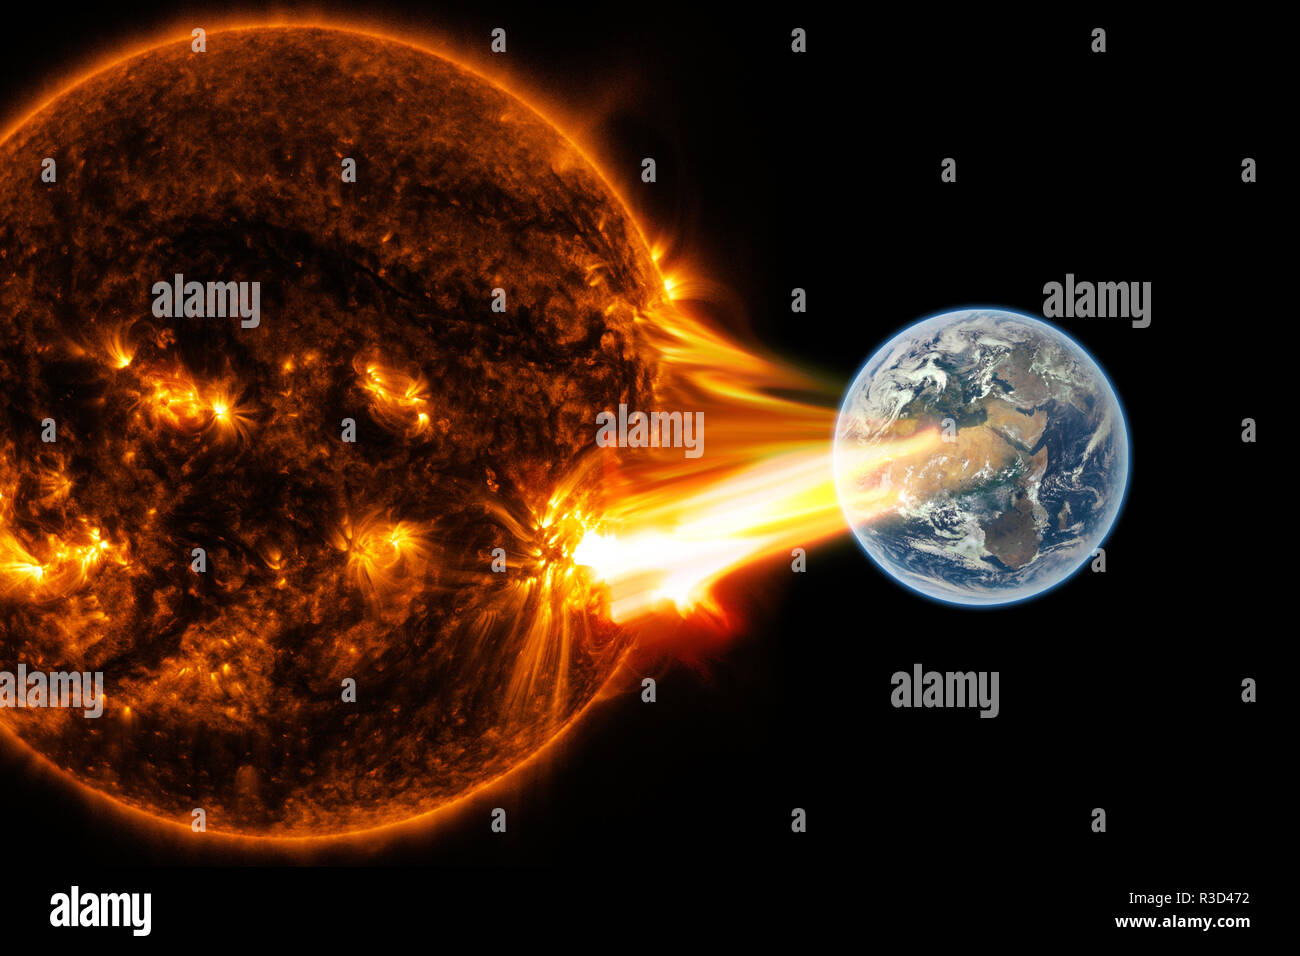 Tempesta solare immagini e fotografie stock ad alta risoluzione - Alamy